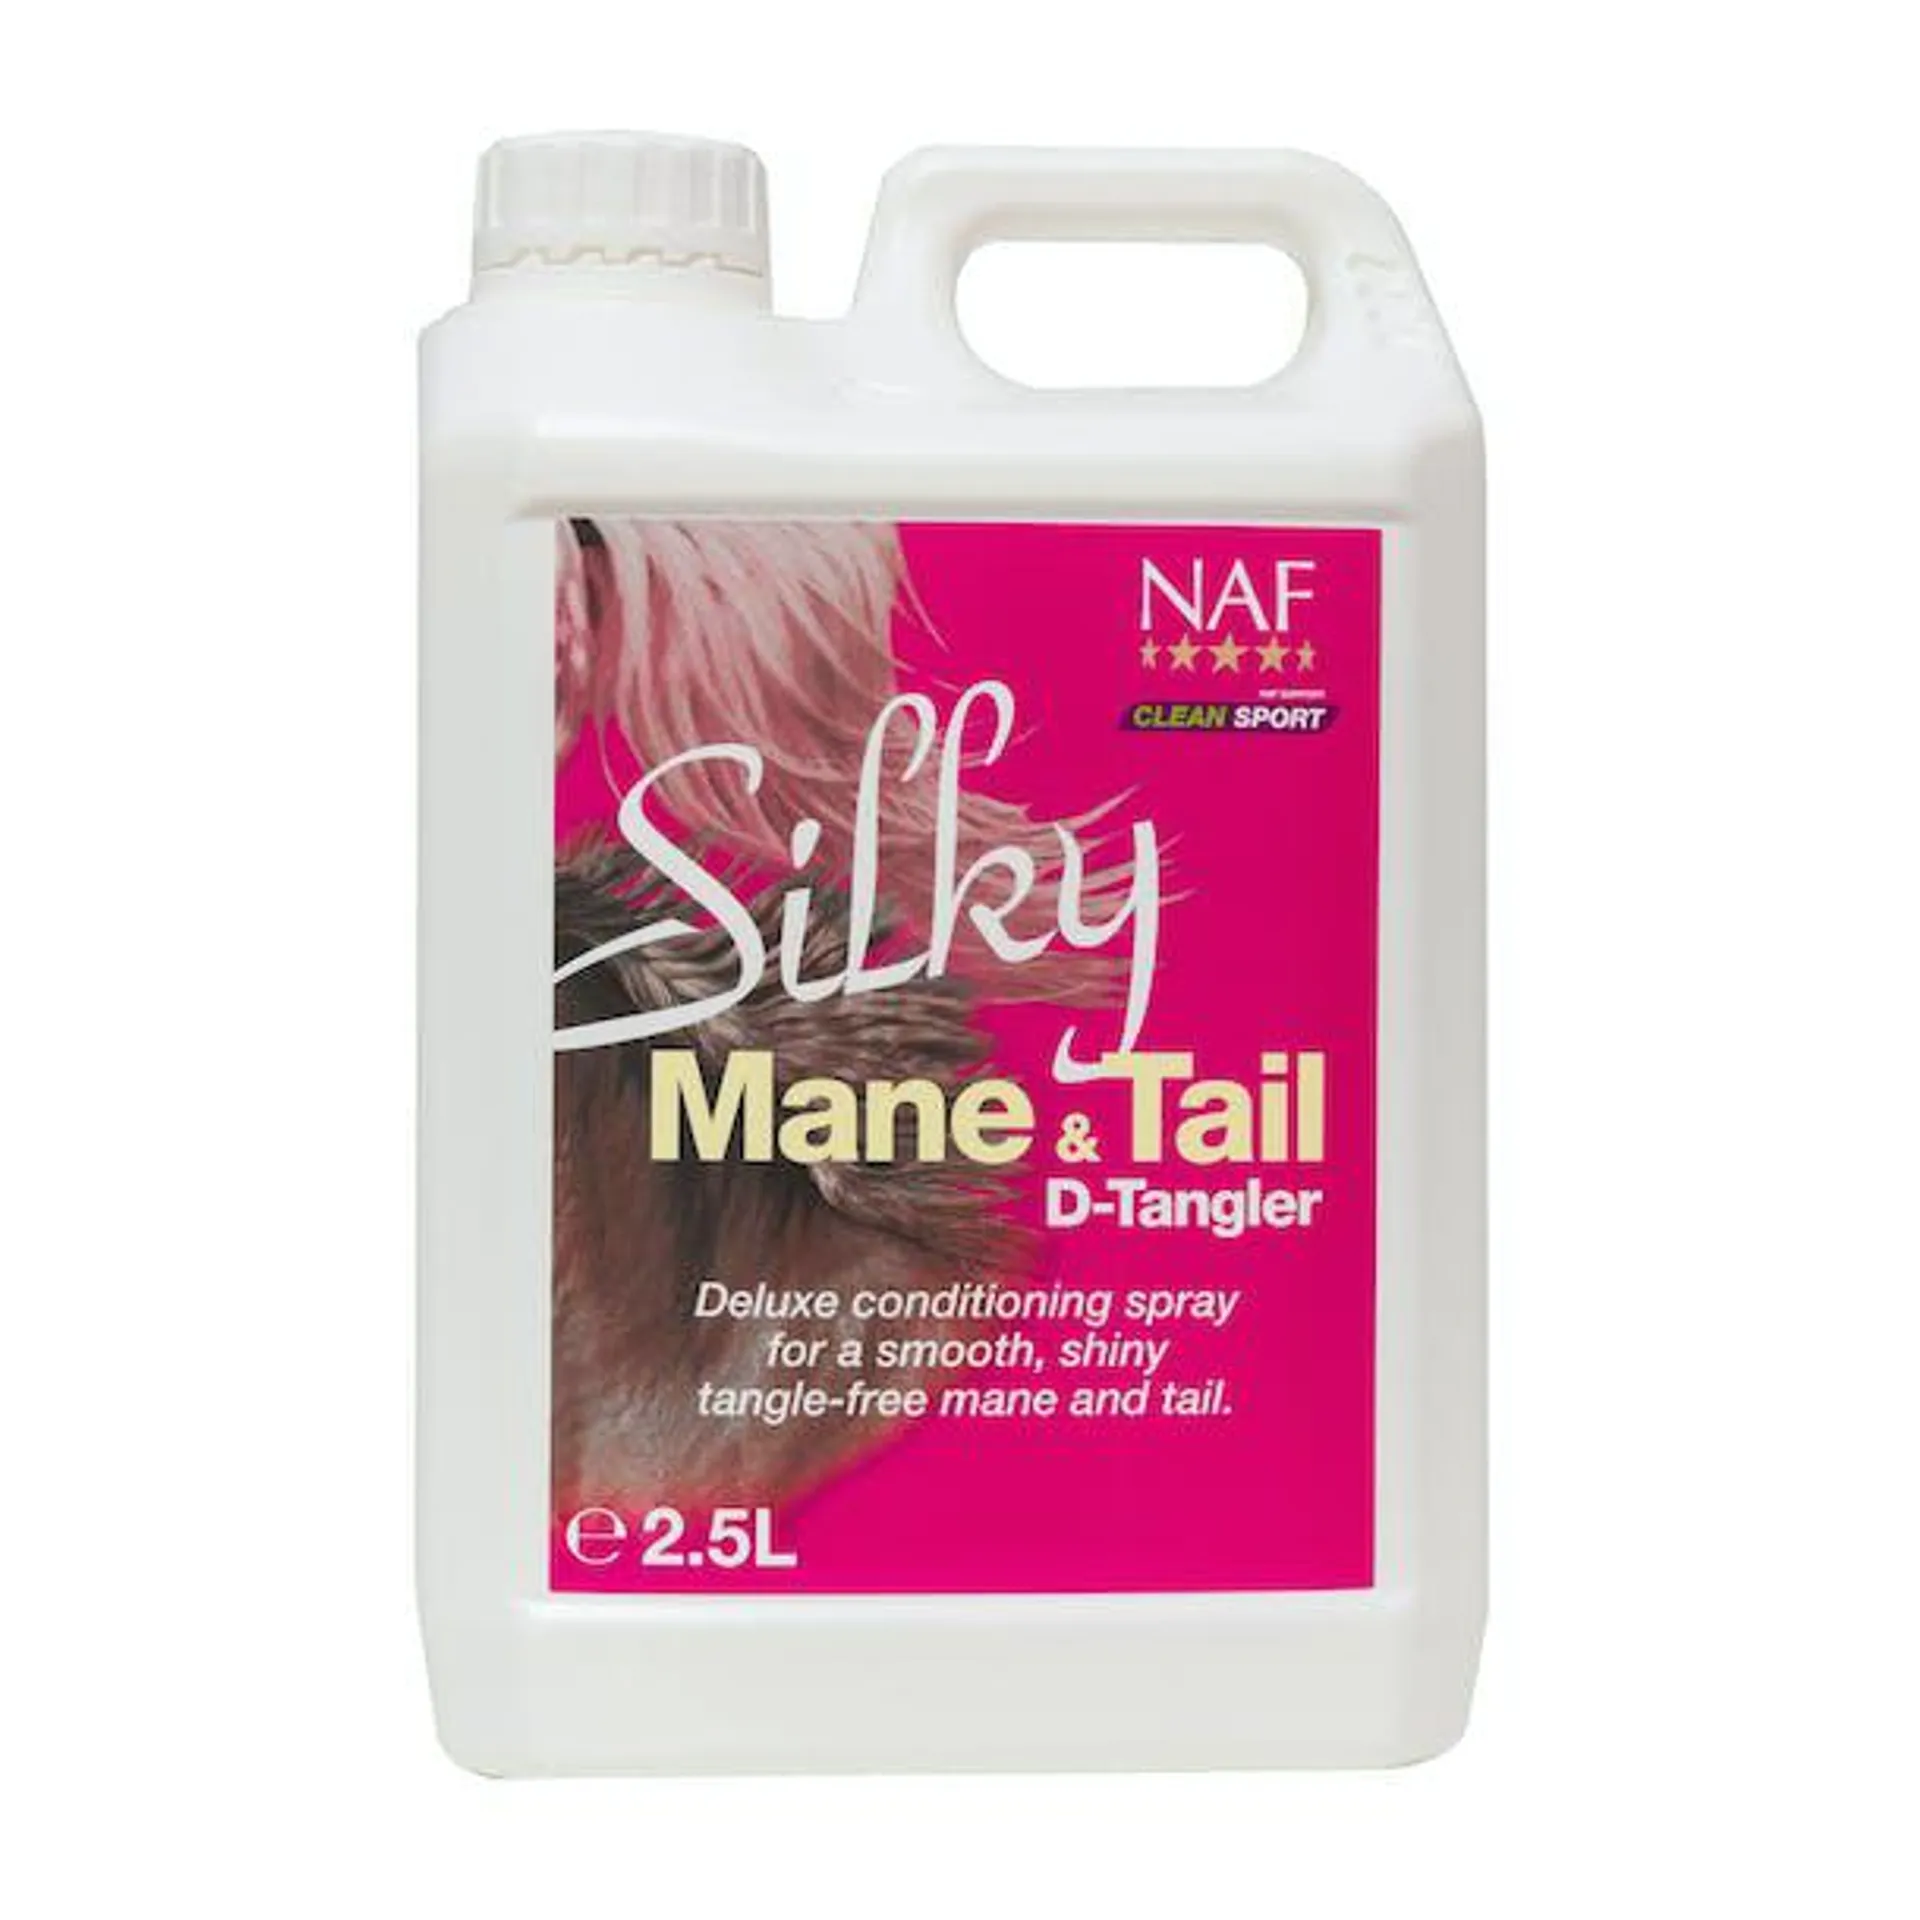 NAF Silky Mane and Tail D-Tangler 2.5L Mane Care